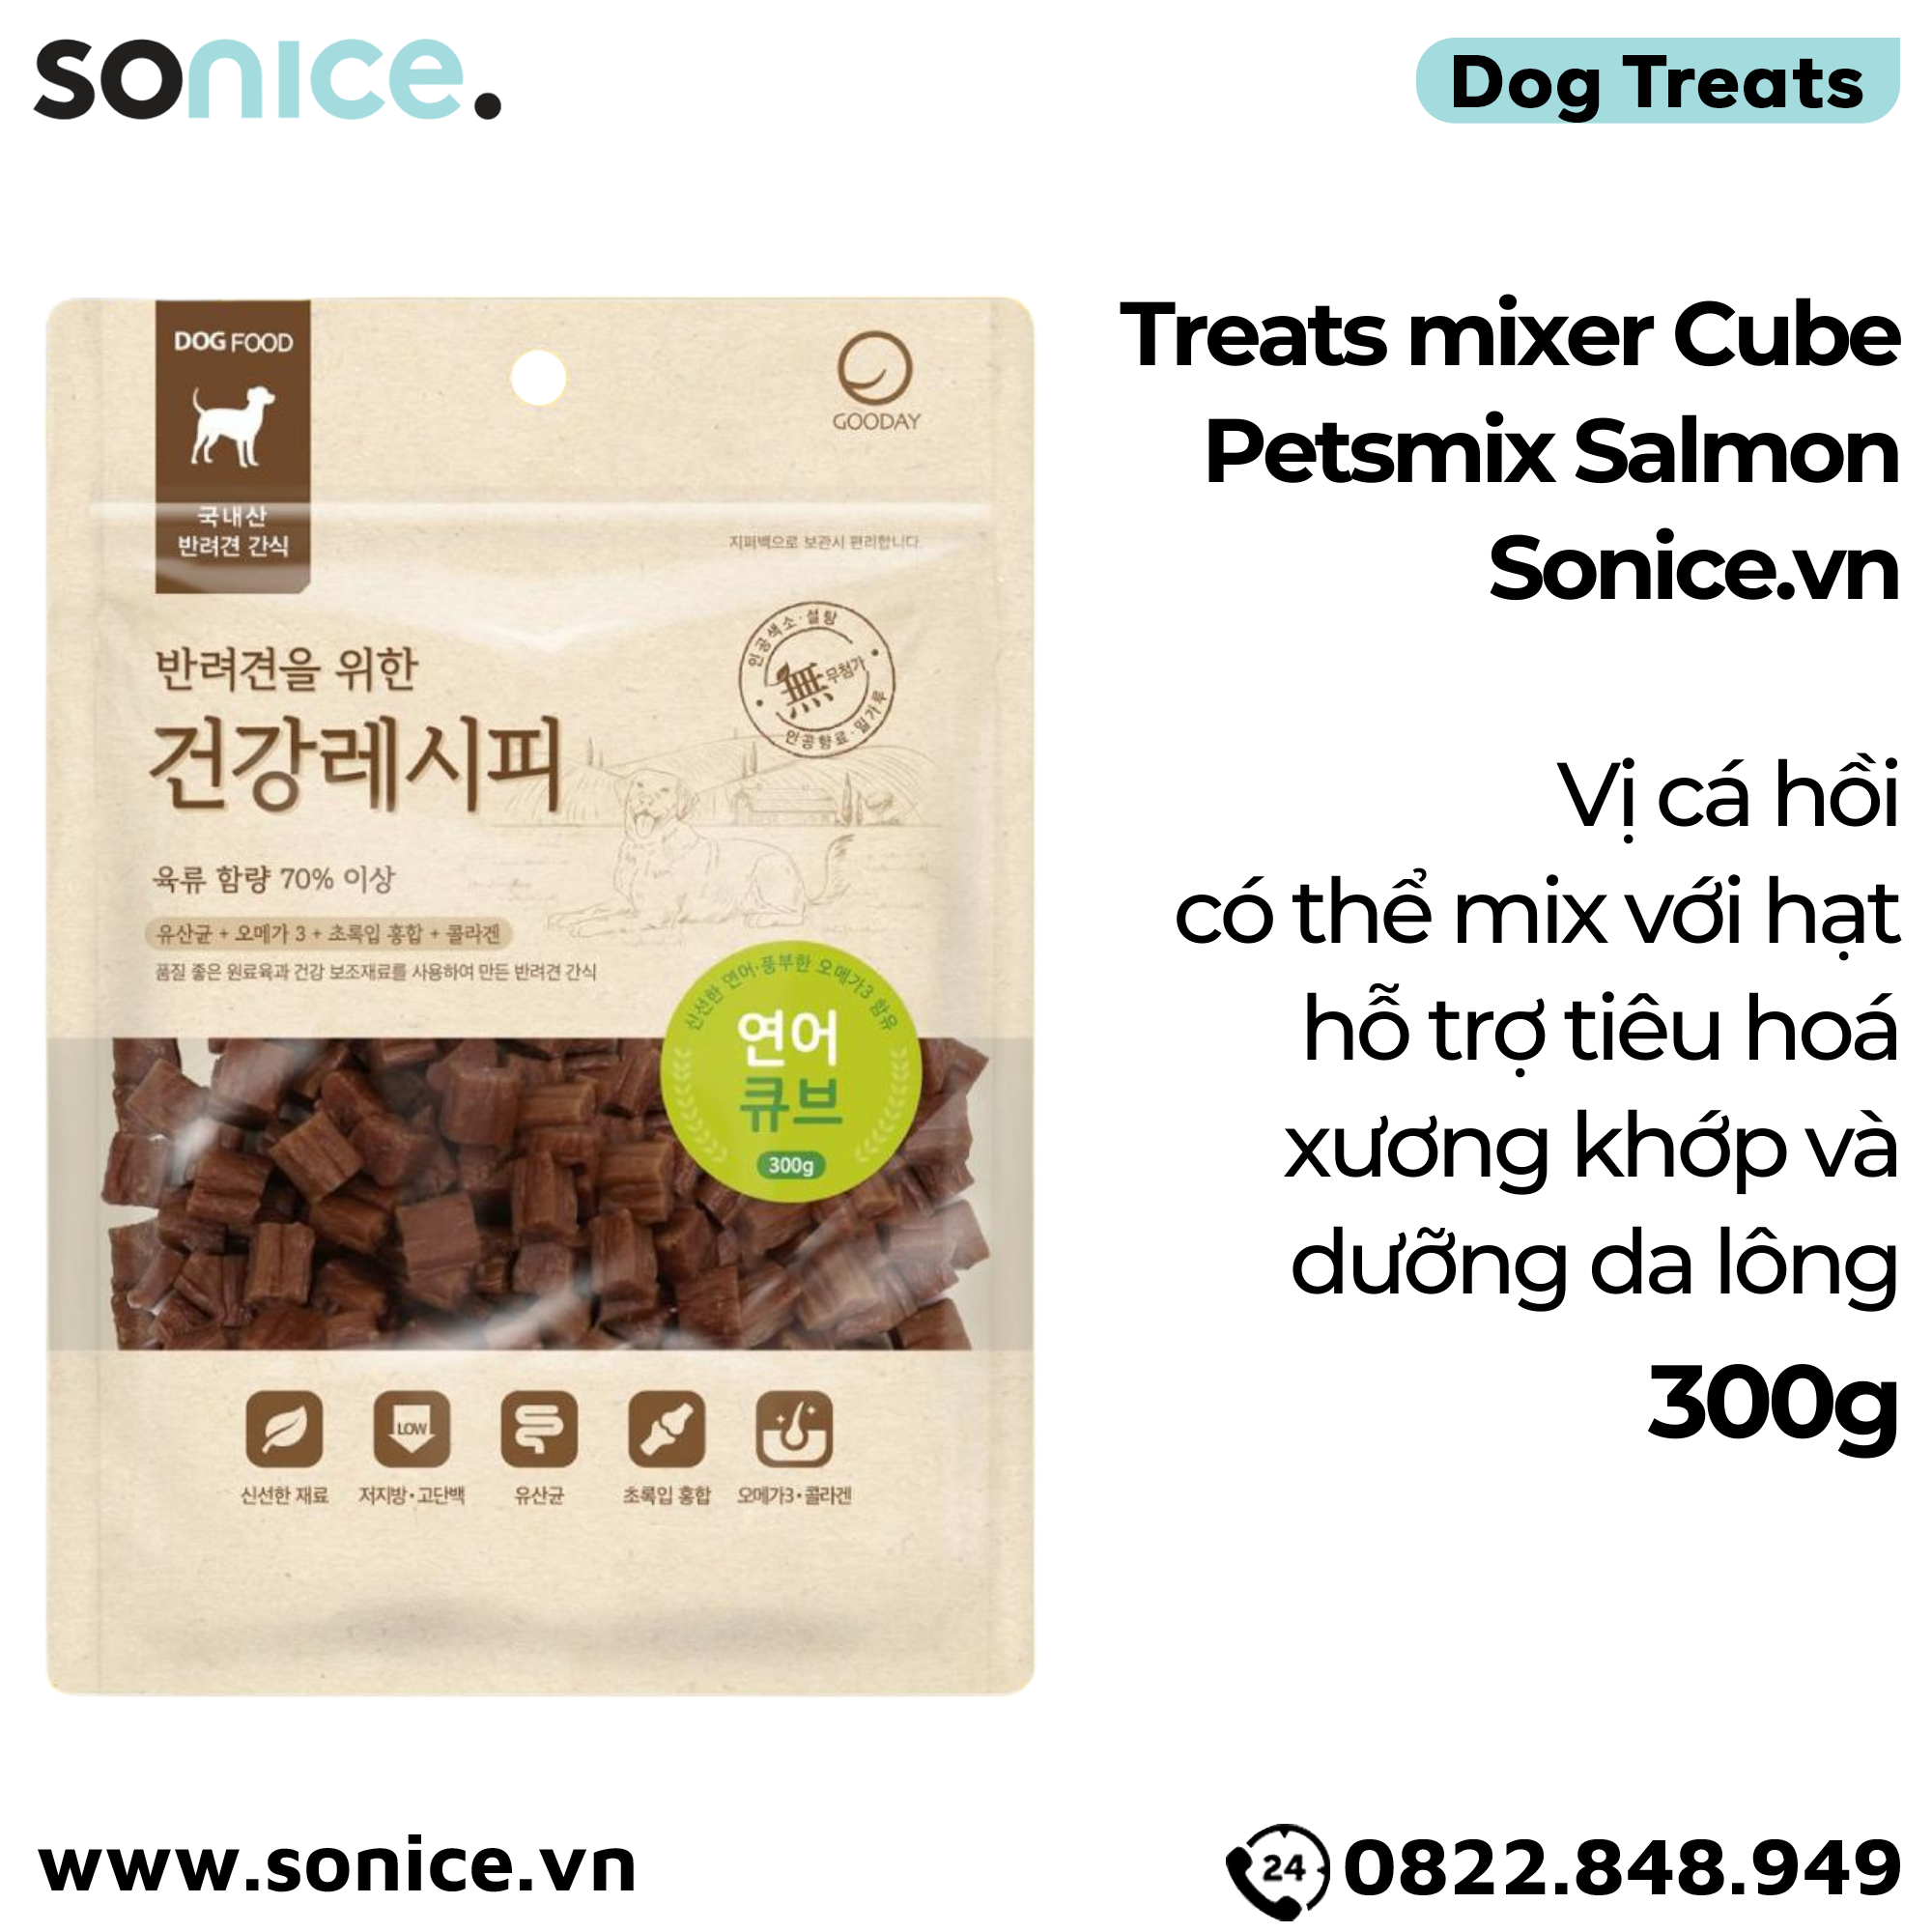  Treats mixer Cube Petsmix Salmon 300g Korea - Cá hồi, có thể mix với hạt, hỗ trợ tiêu hoá, xương khớp, dưỡng da lông SONICE. 